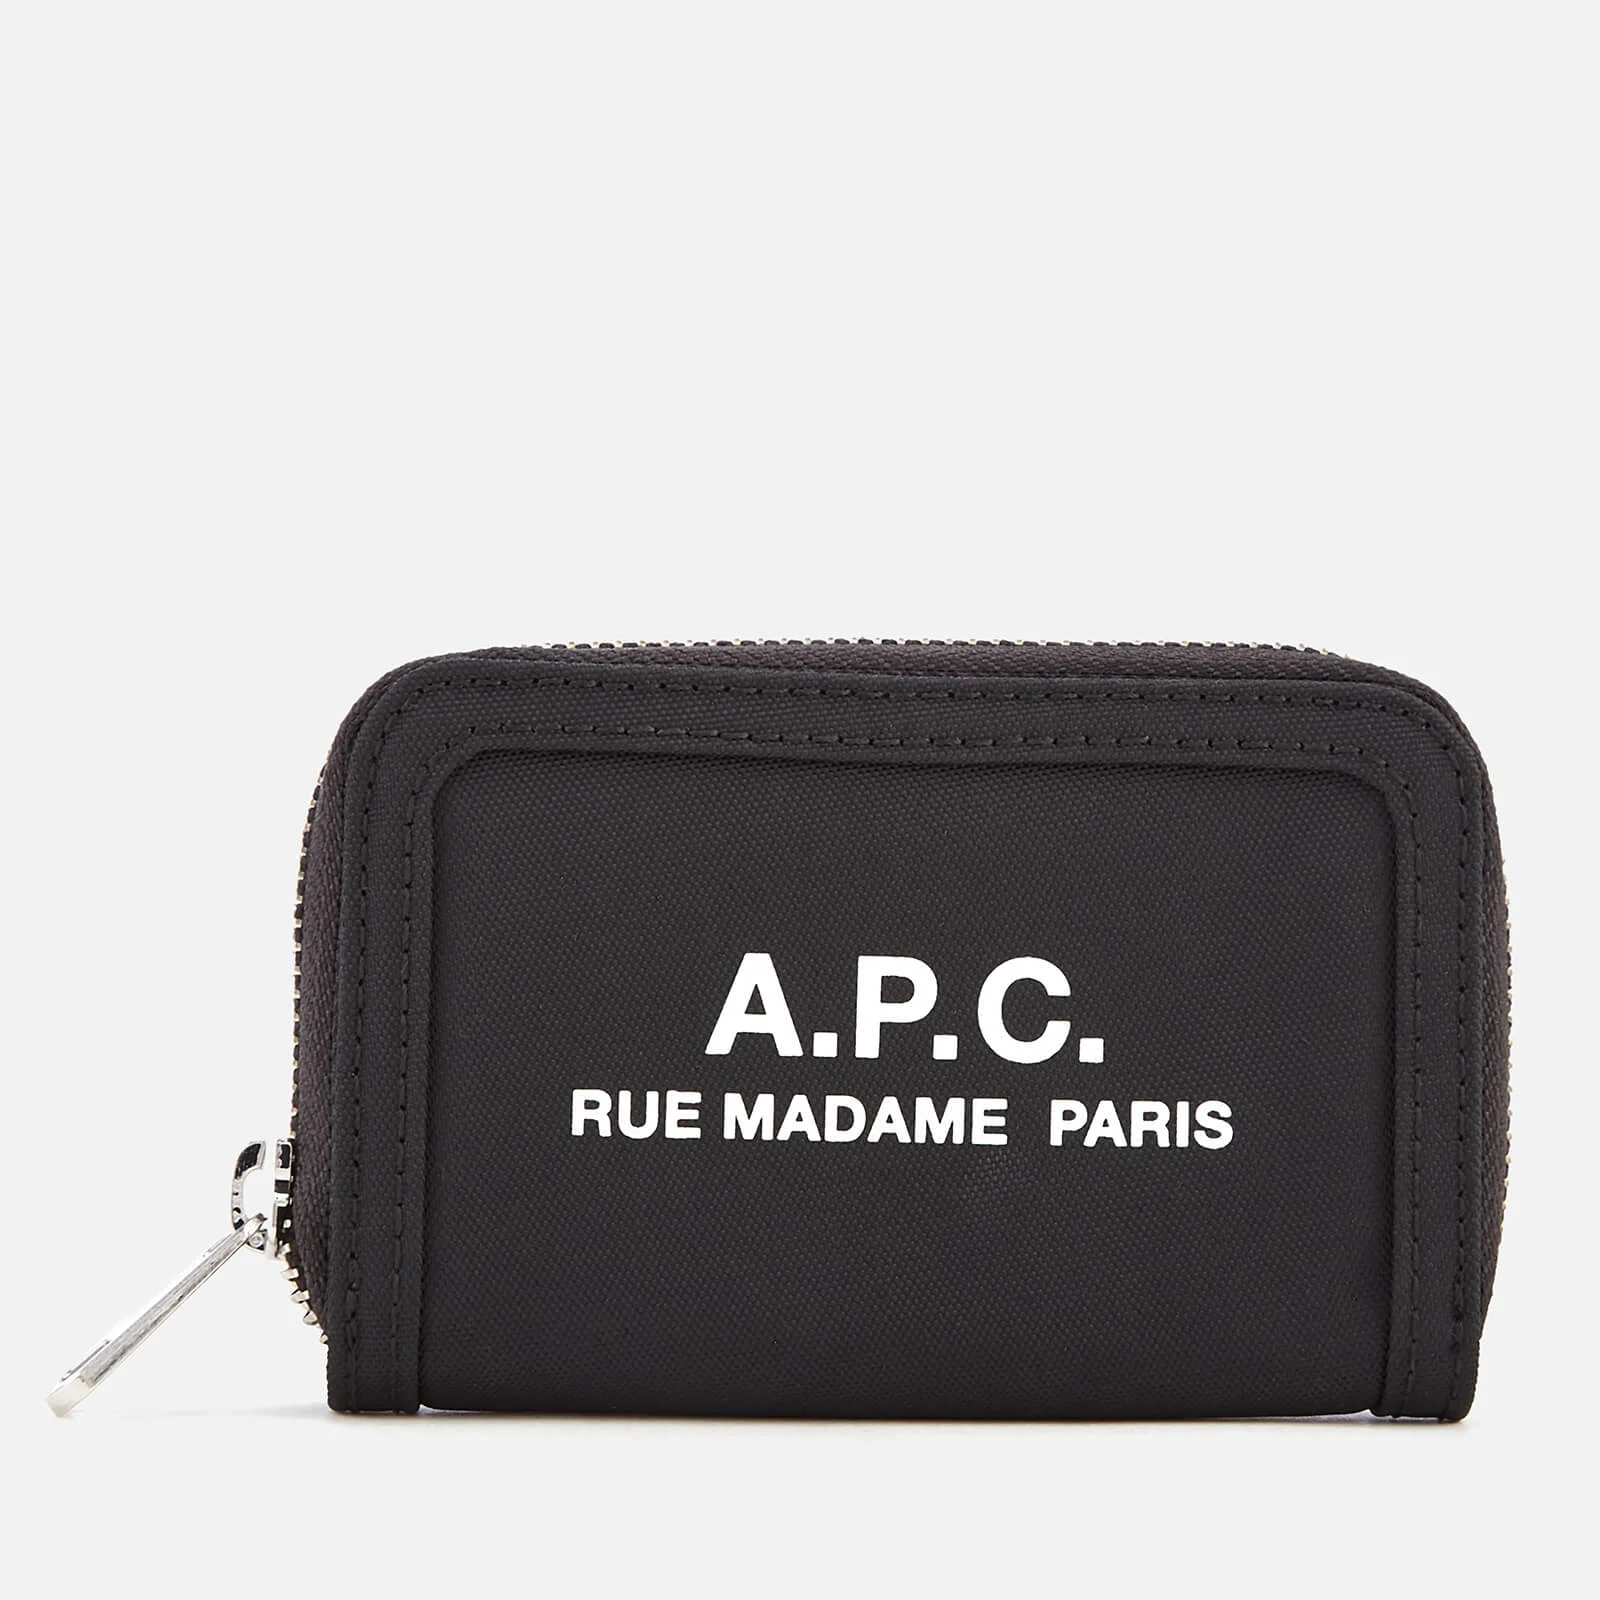 A.P.C. Men's Recuperation Compact Wallet - Noir Image 1